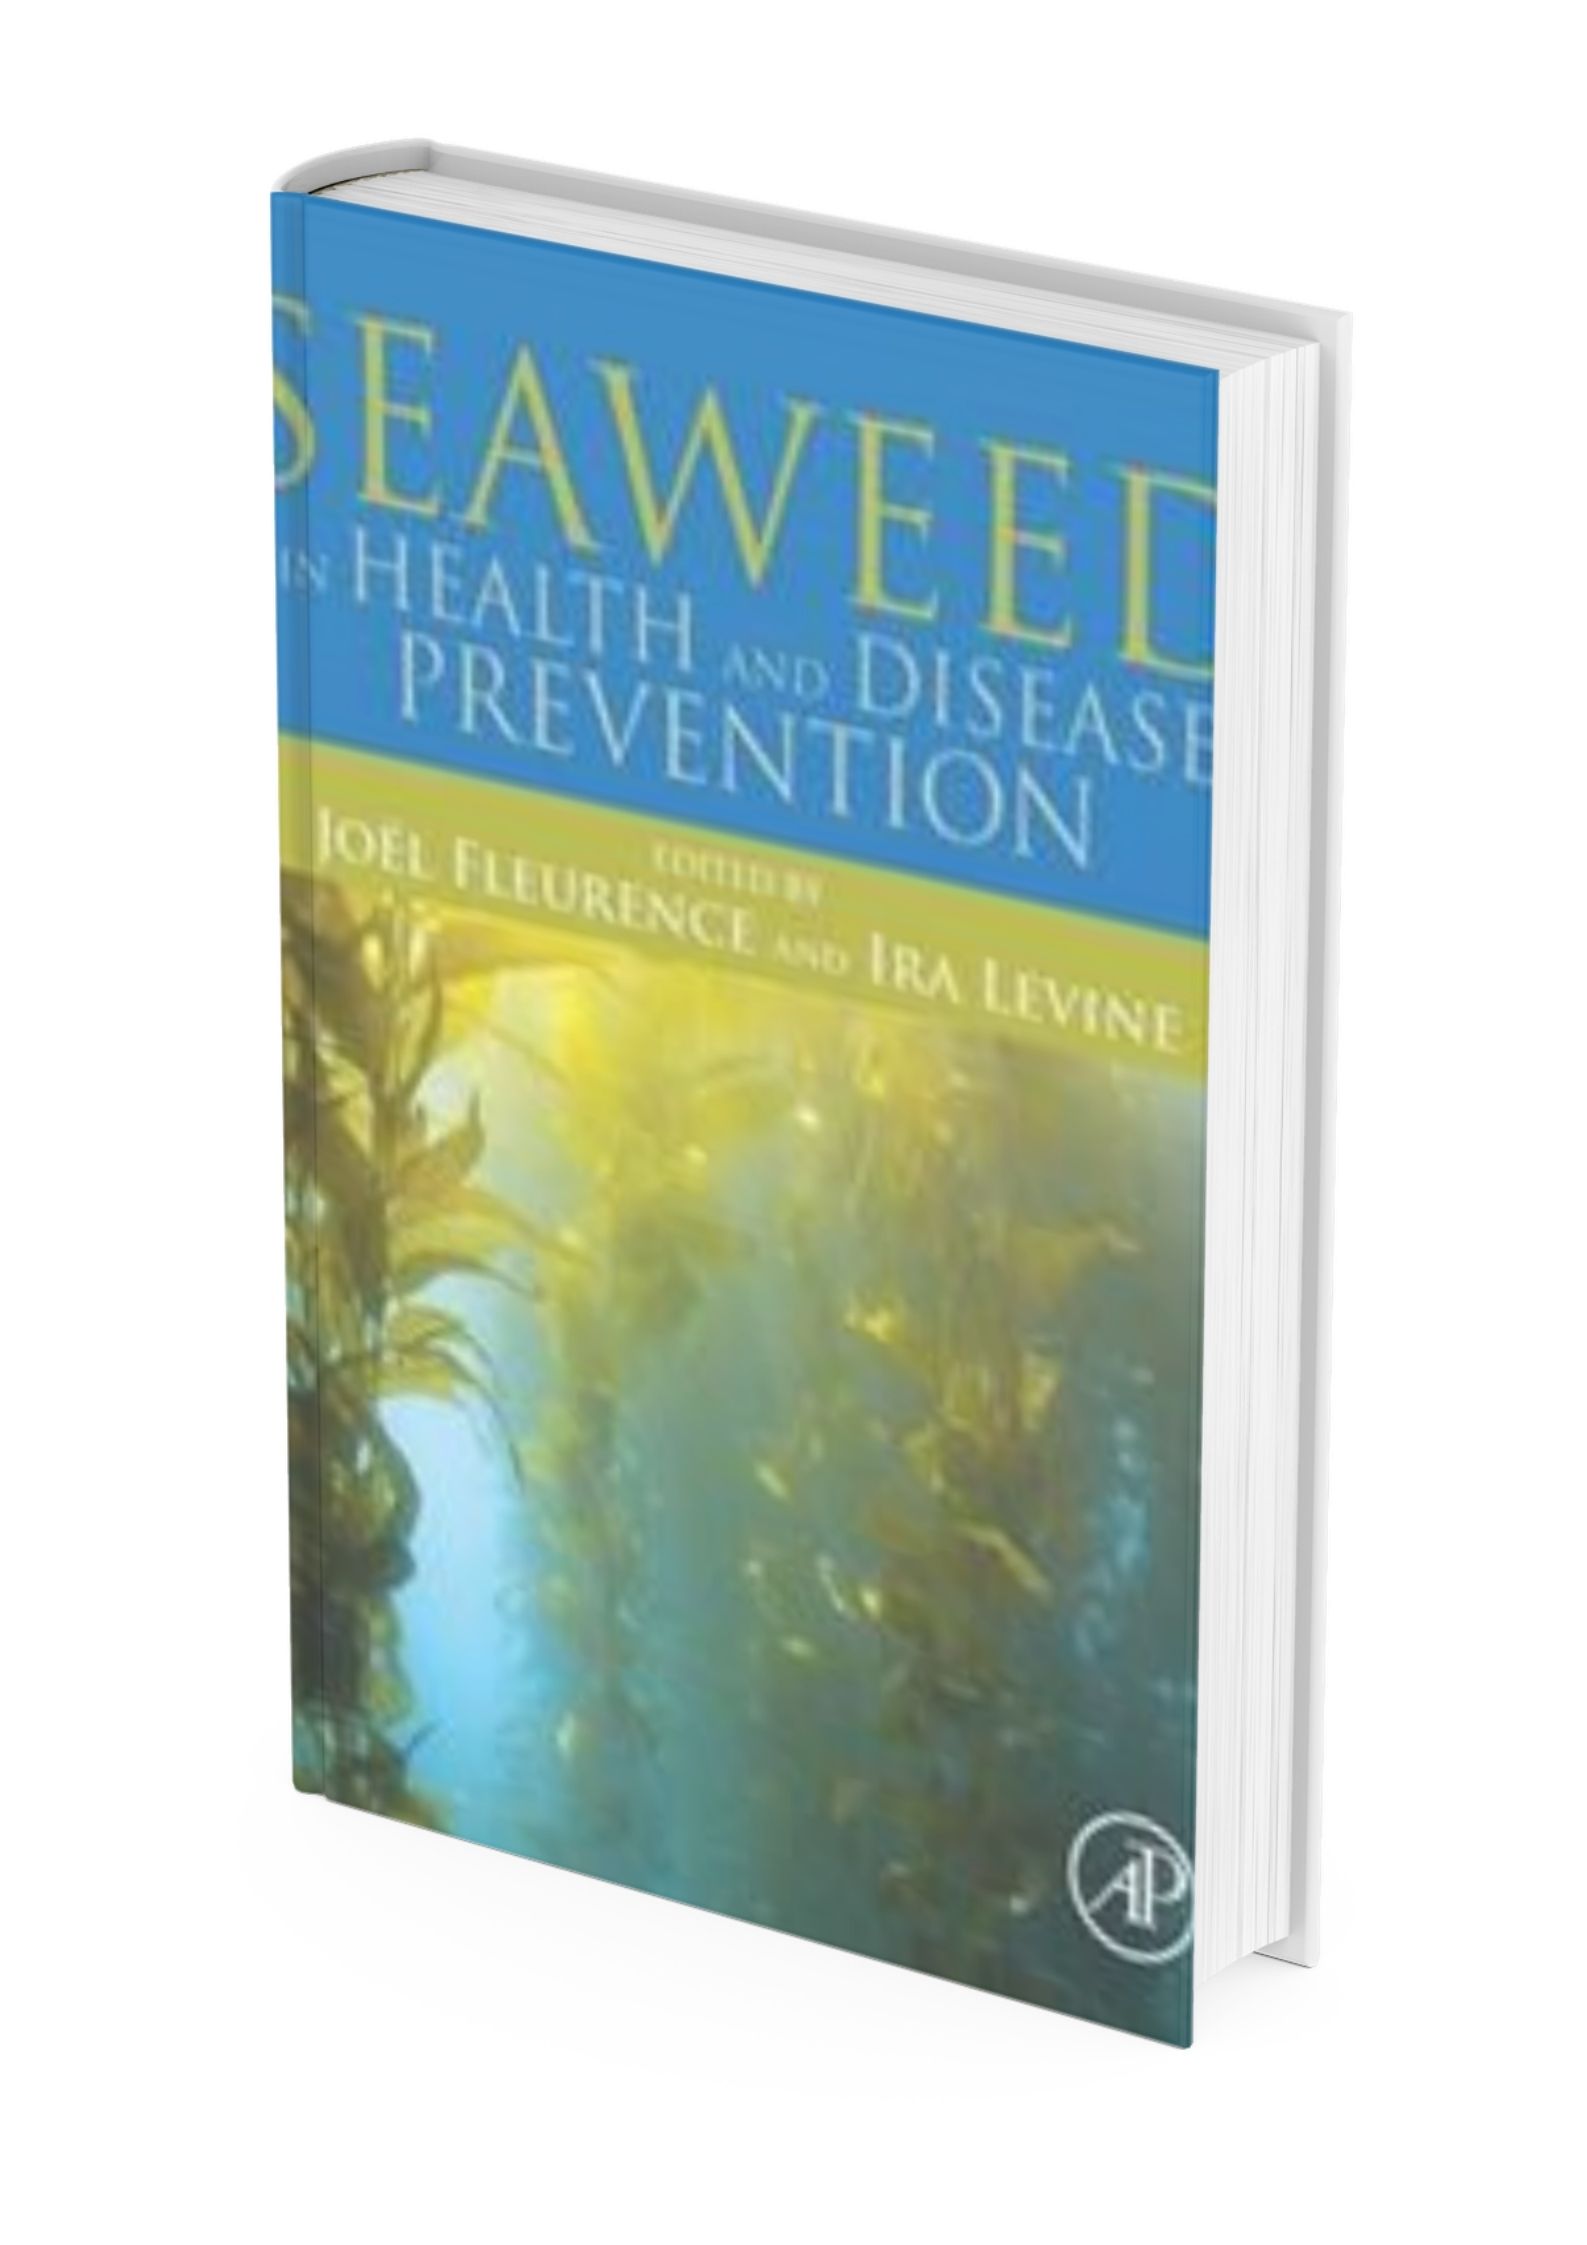 seaweed-in-health-and-disease-prevention kirja